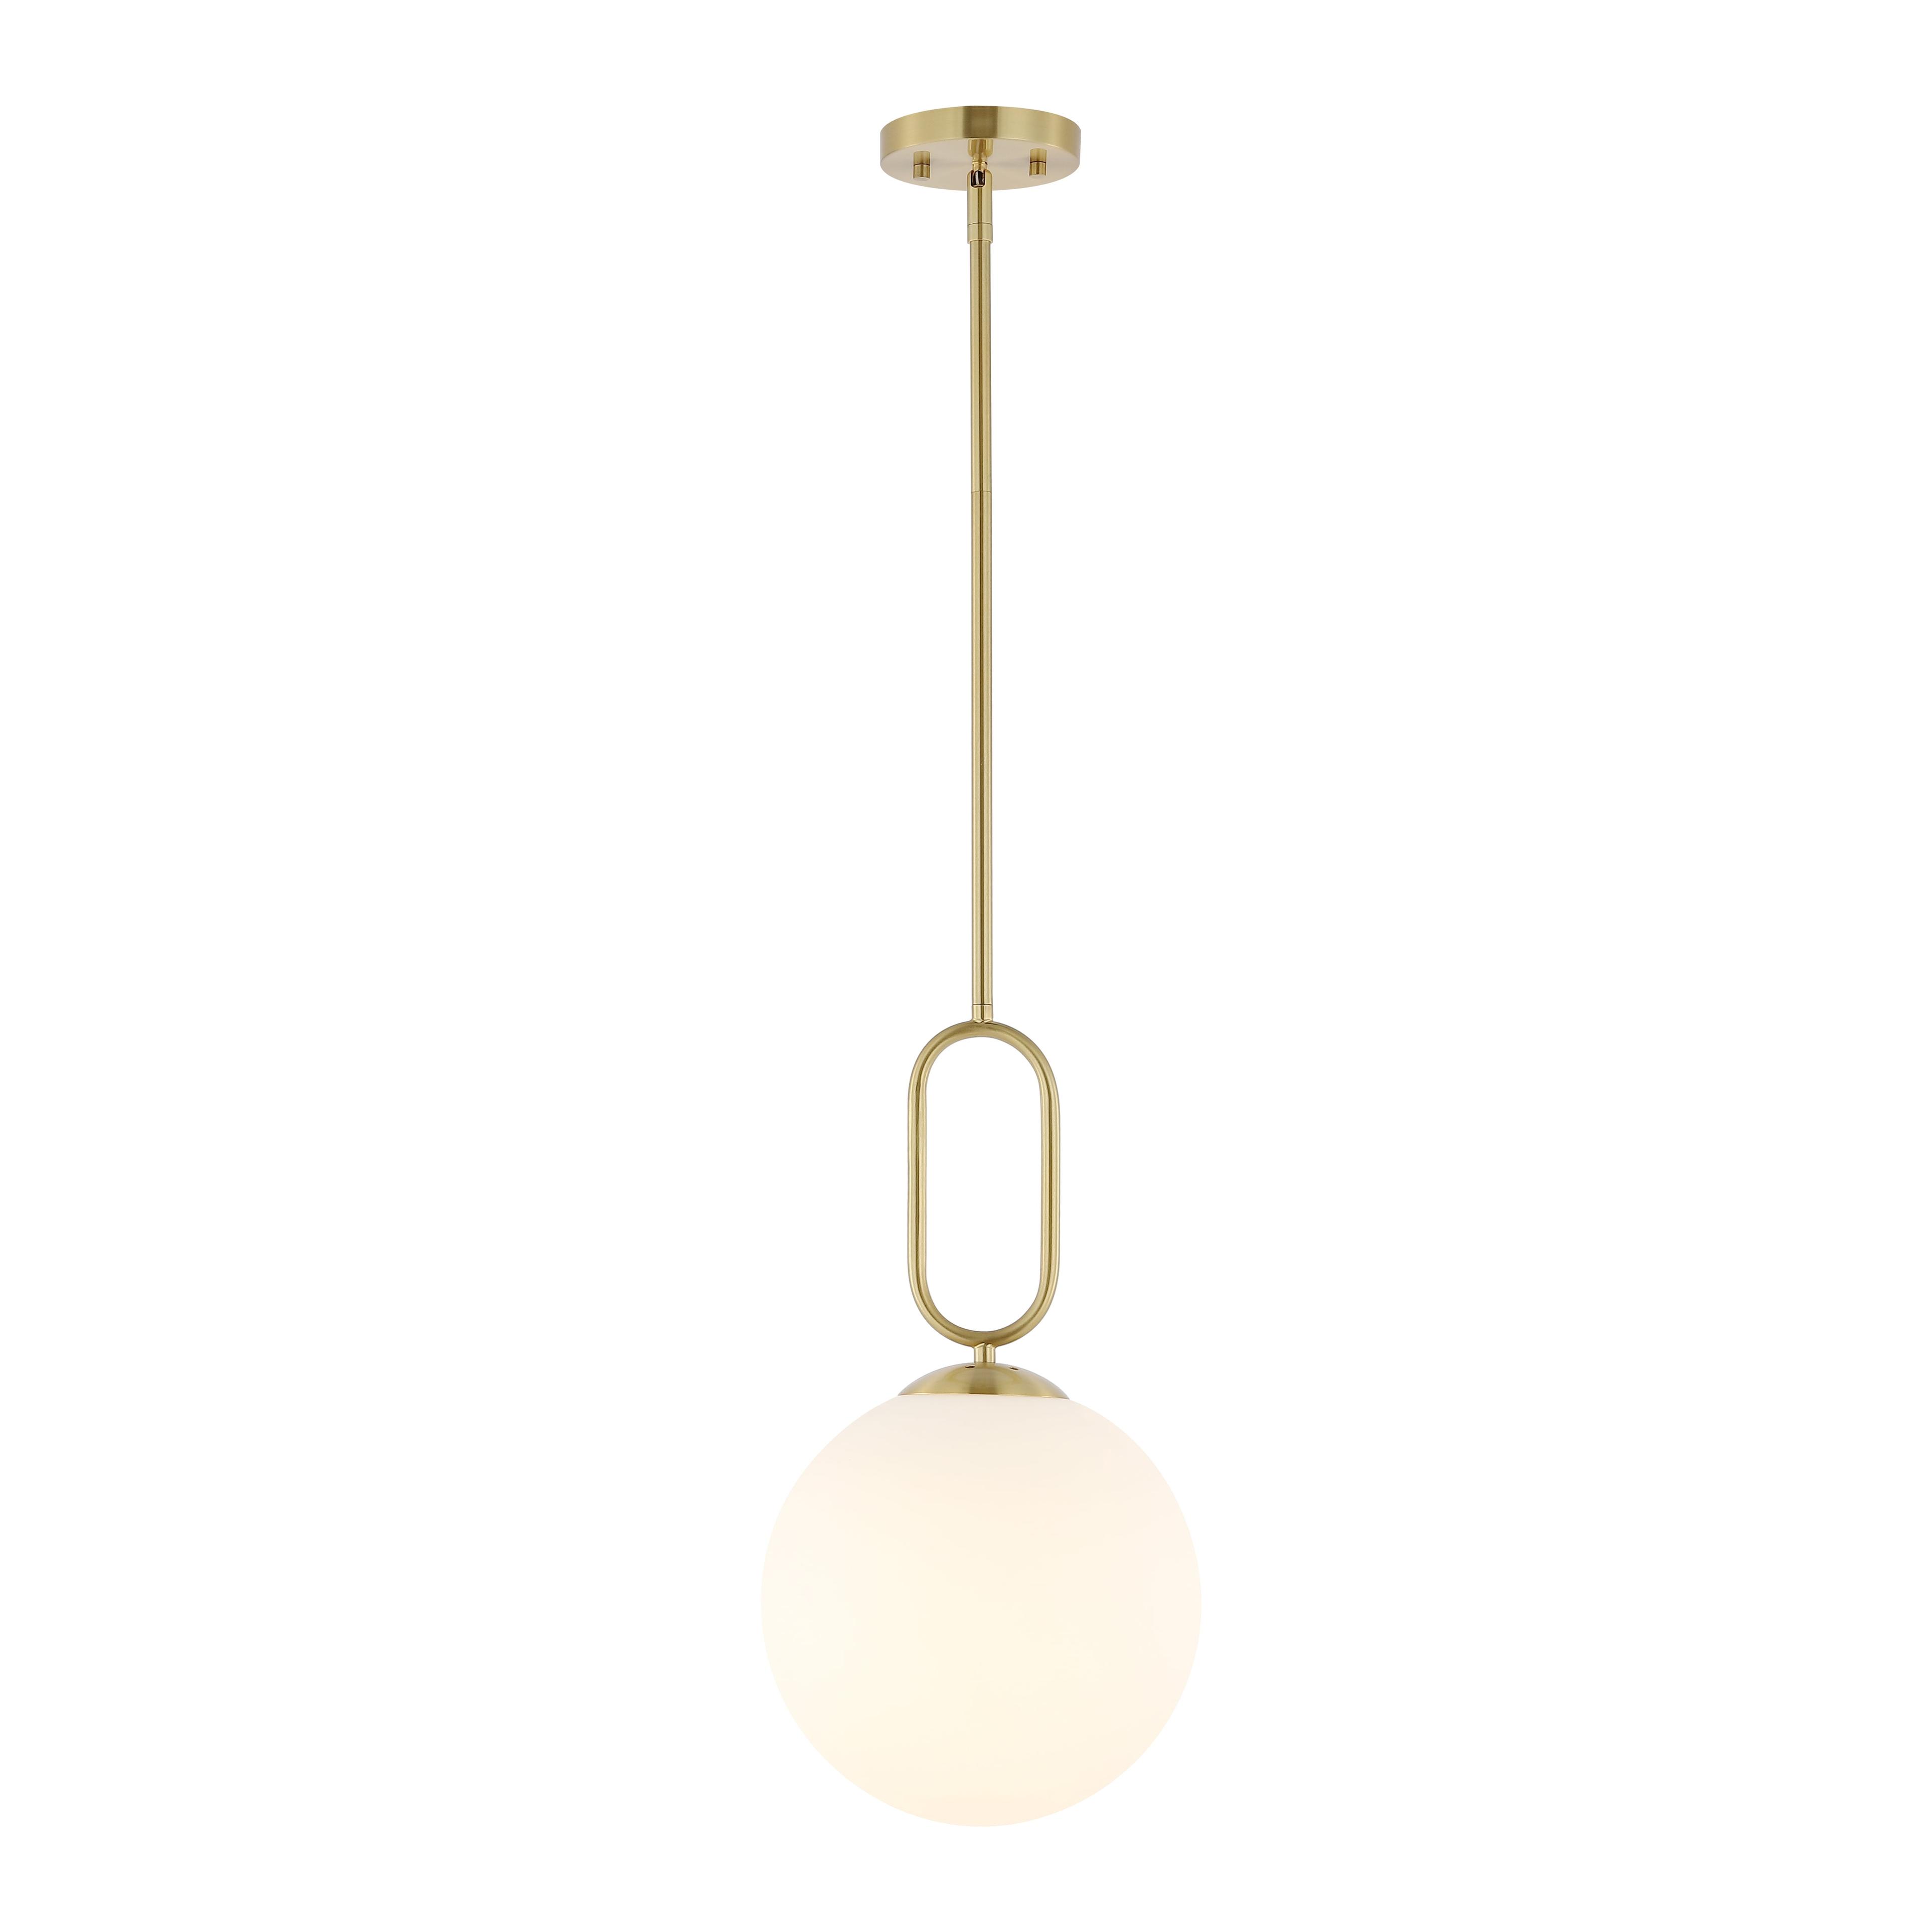 Danva Art Deco Inspired Brass & Glass Globe Pendant Light